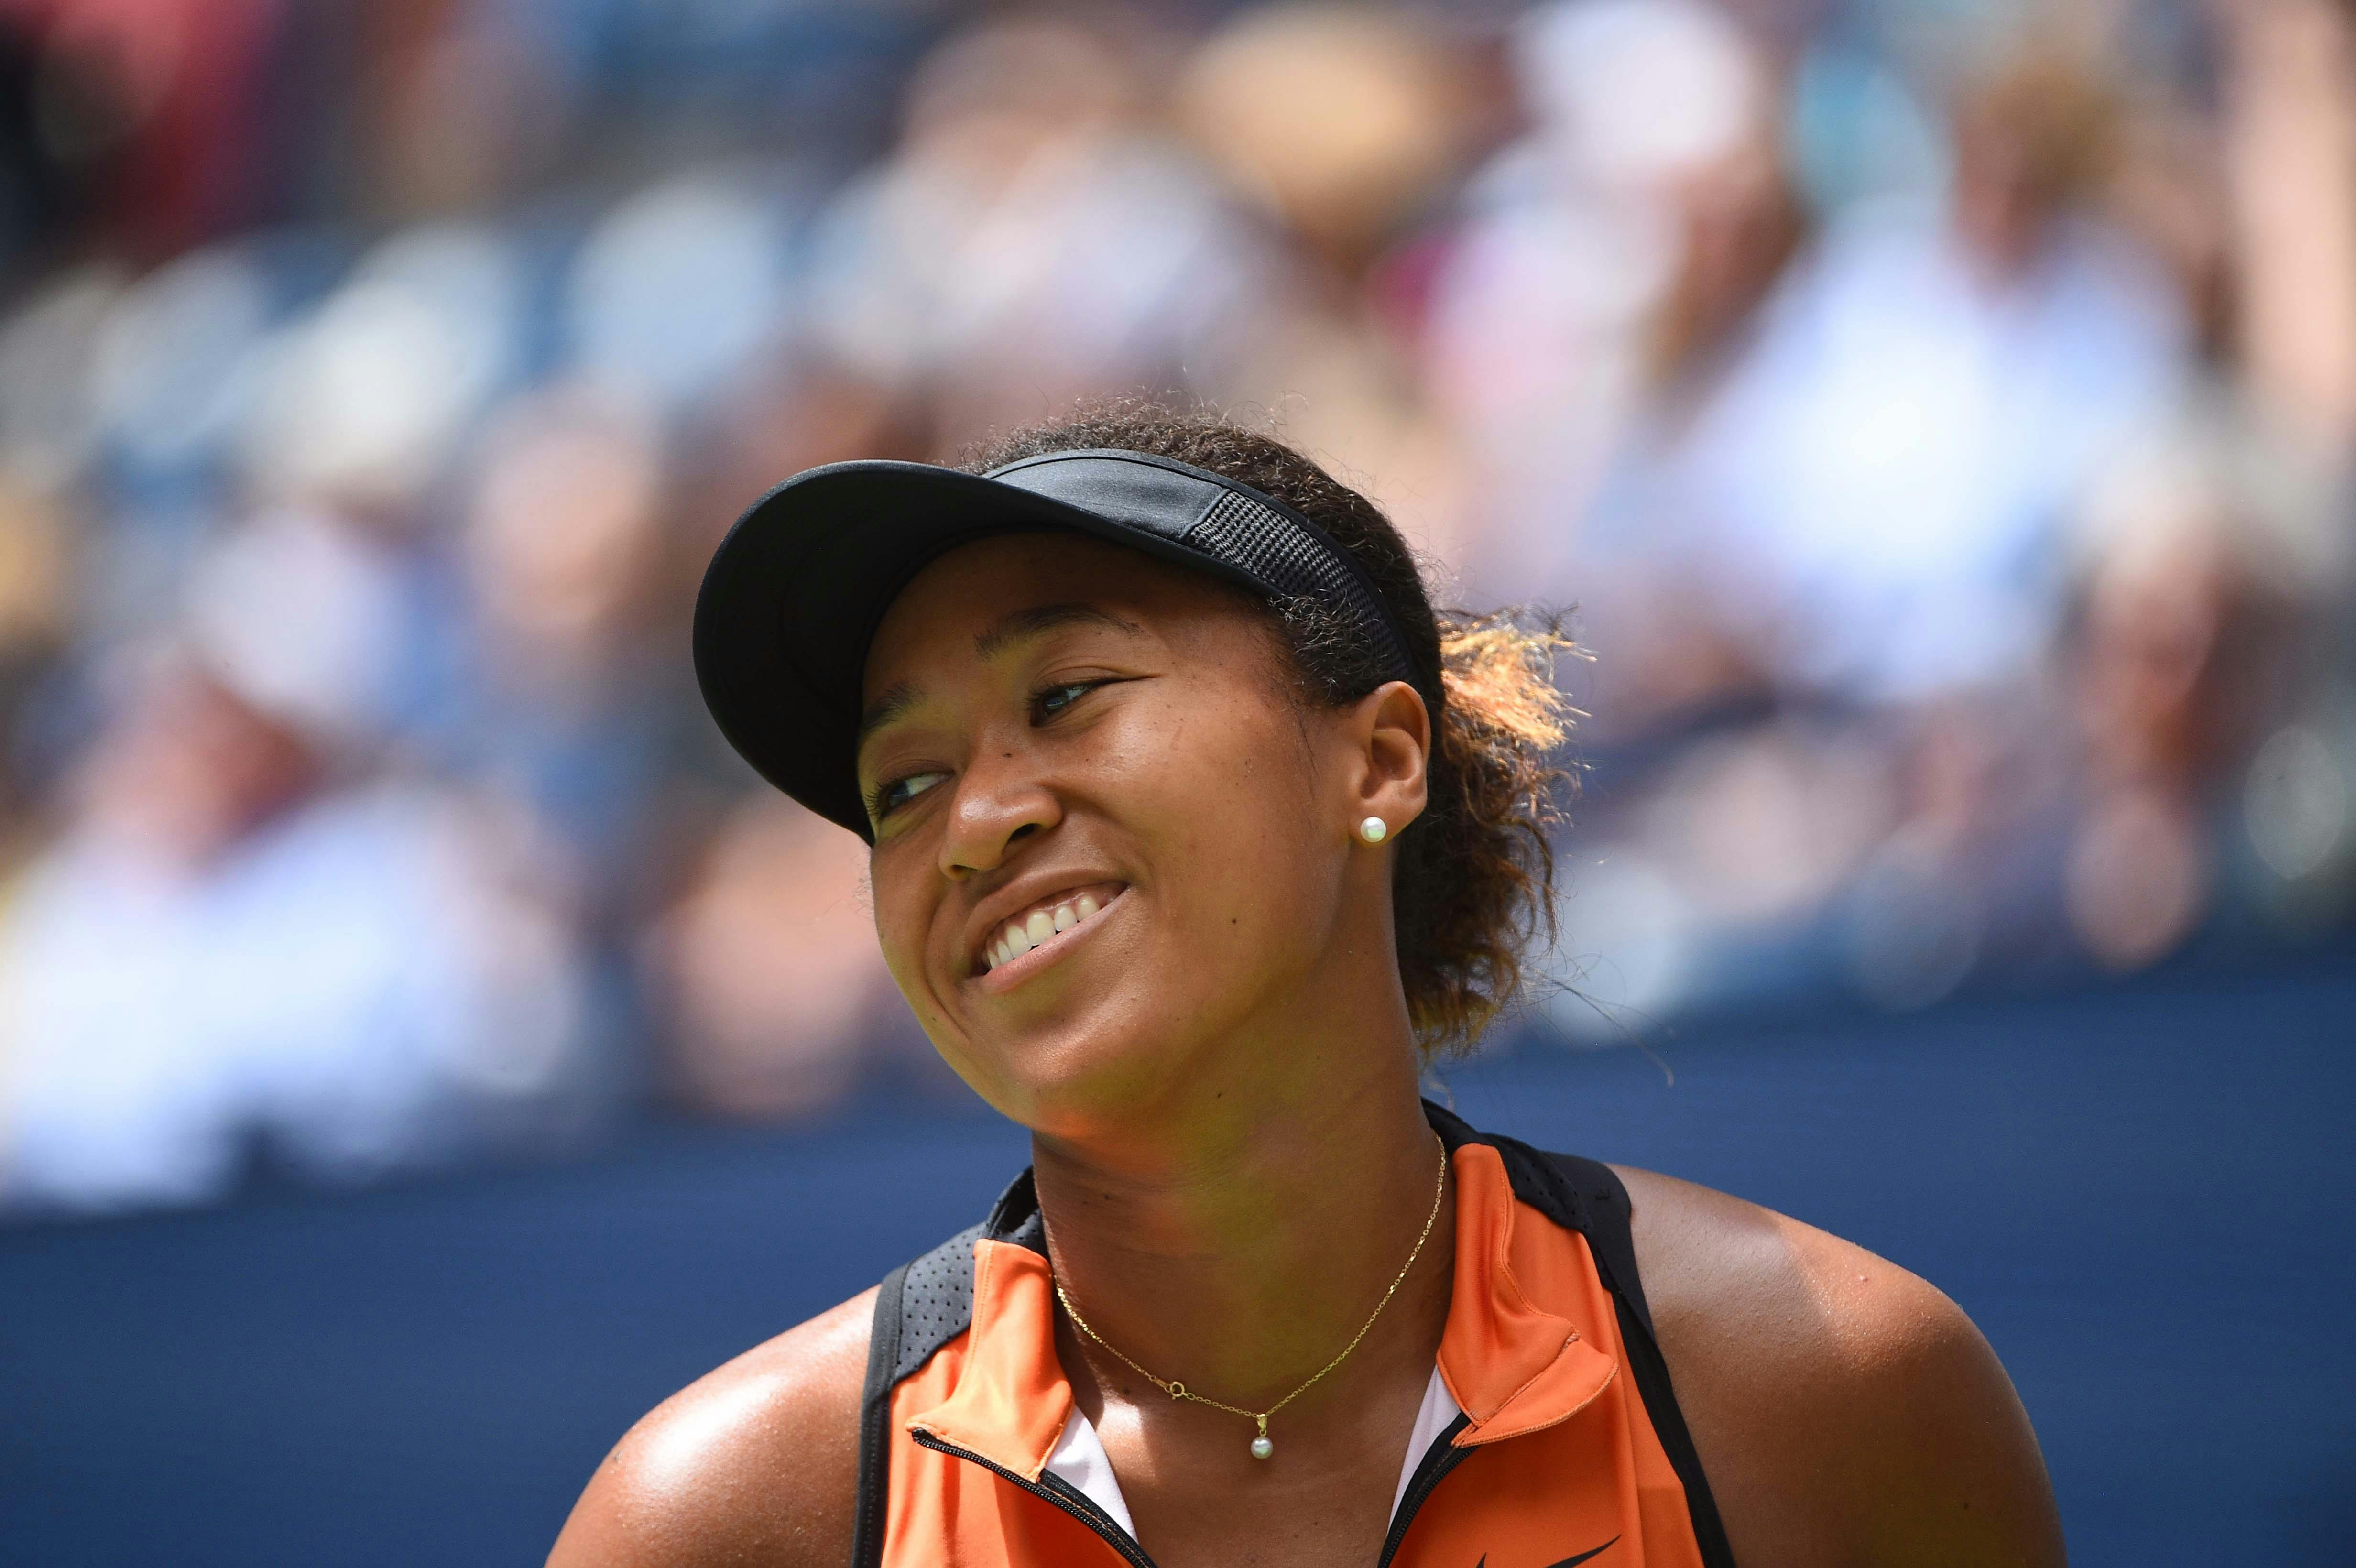 Naomi Osaka smiles during the 2019 US Open